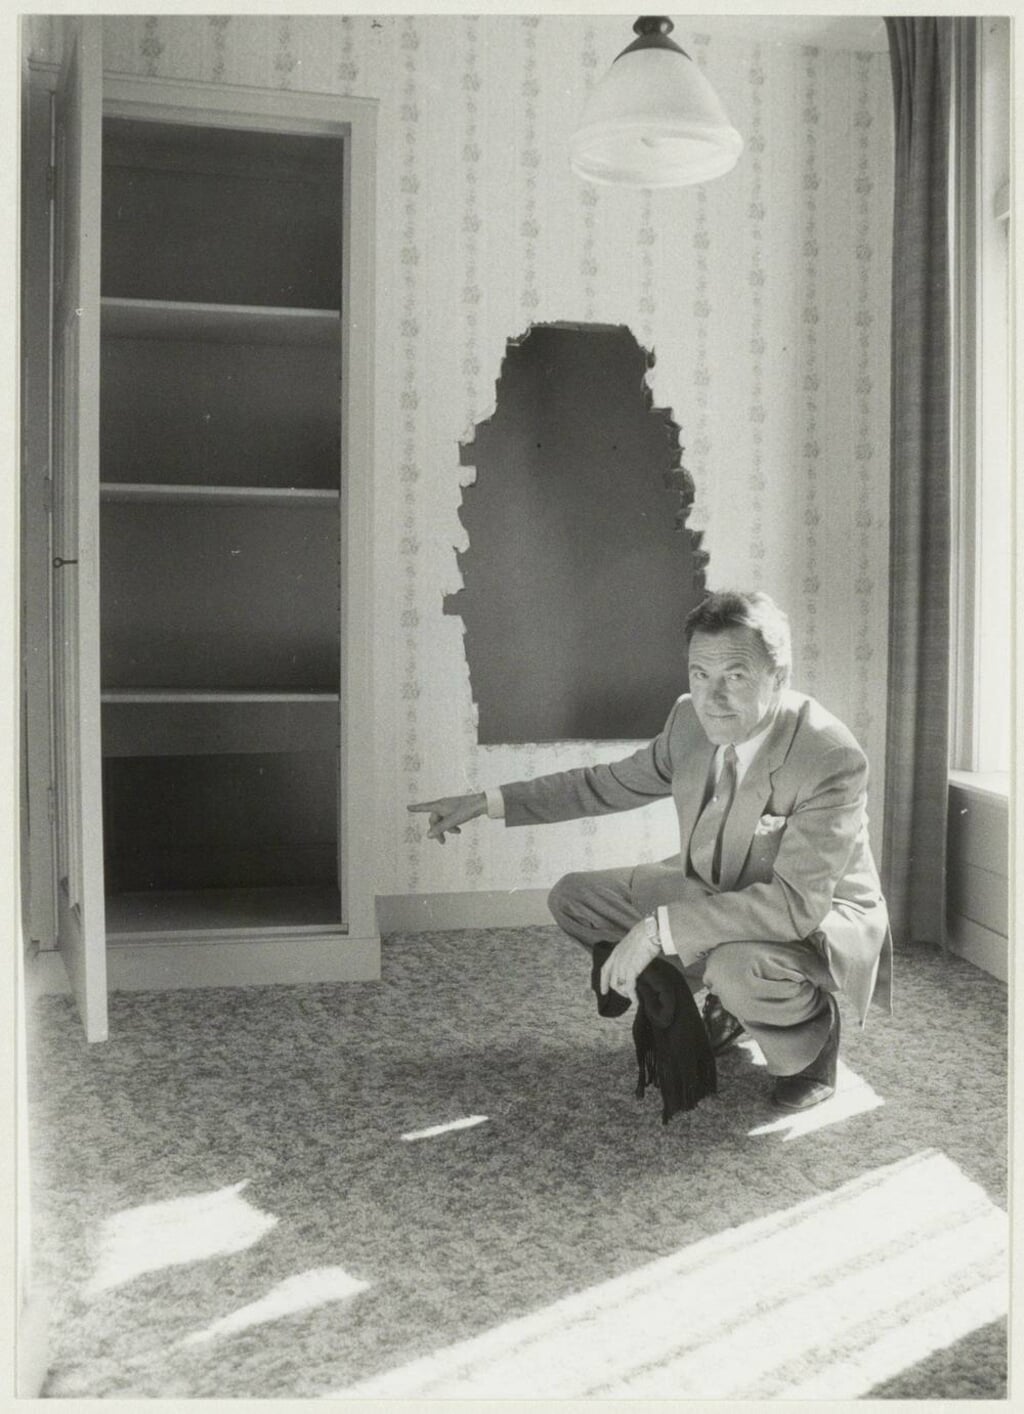 De toegang tot de geheime kamer. Foto uit 1986.